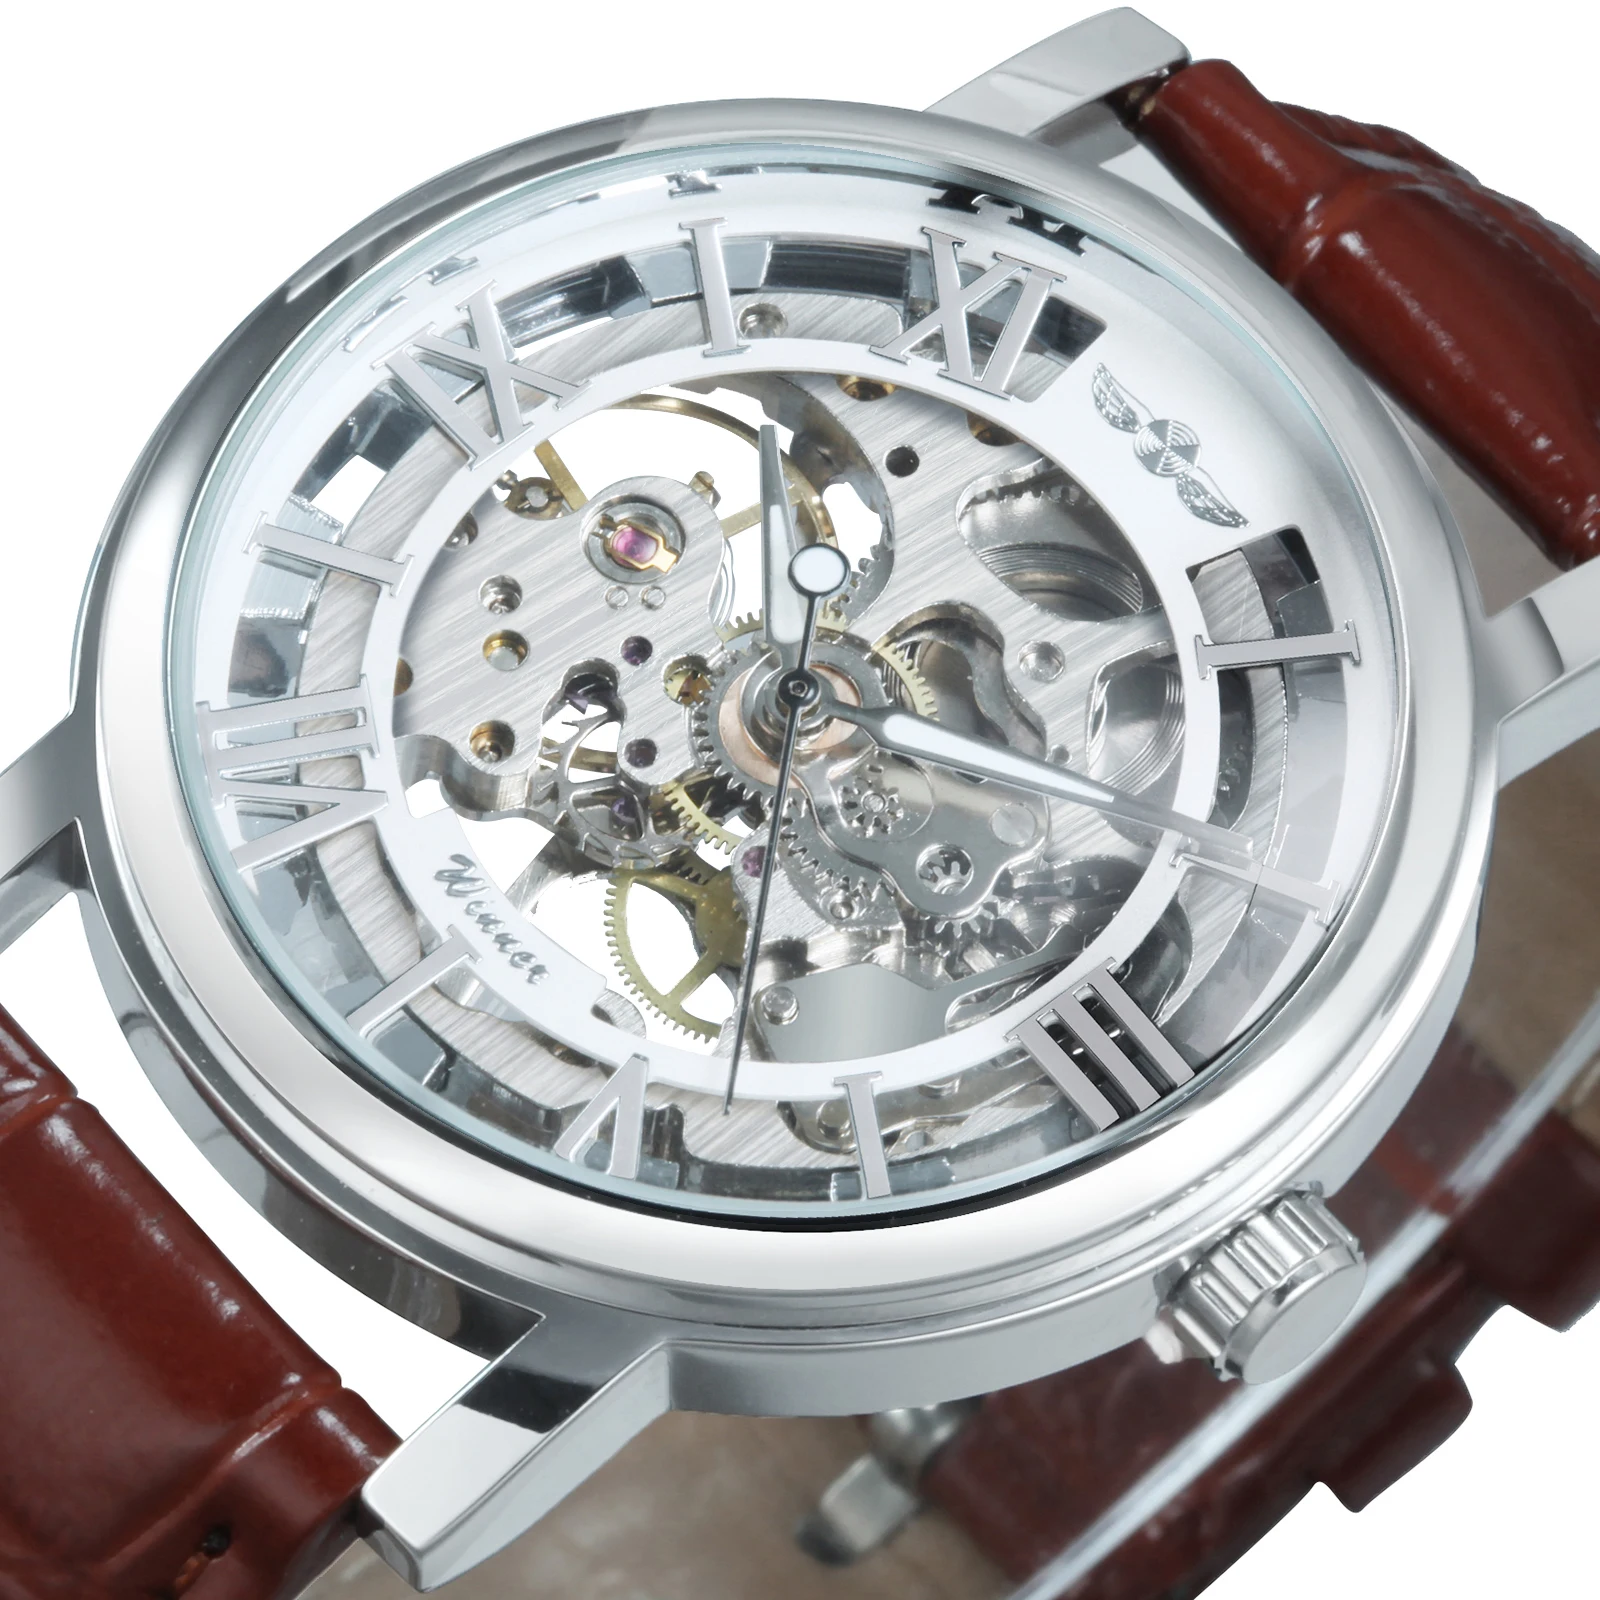 Tanio Zwycięzca Unisex męskie zegarki Top marka luksusowy zegarek mechaniczny